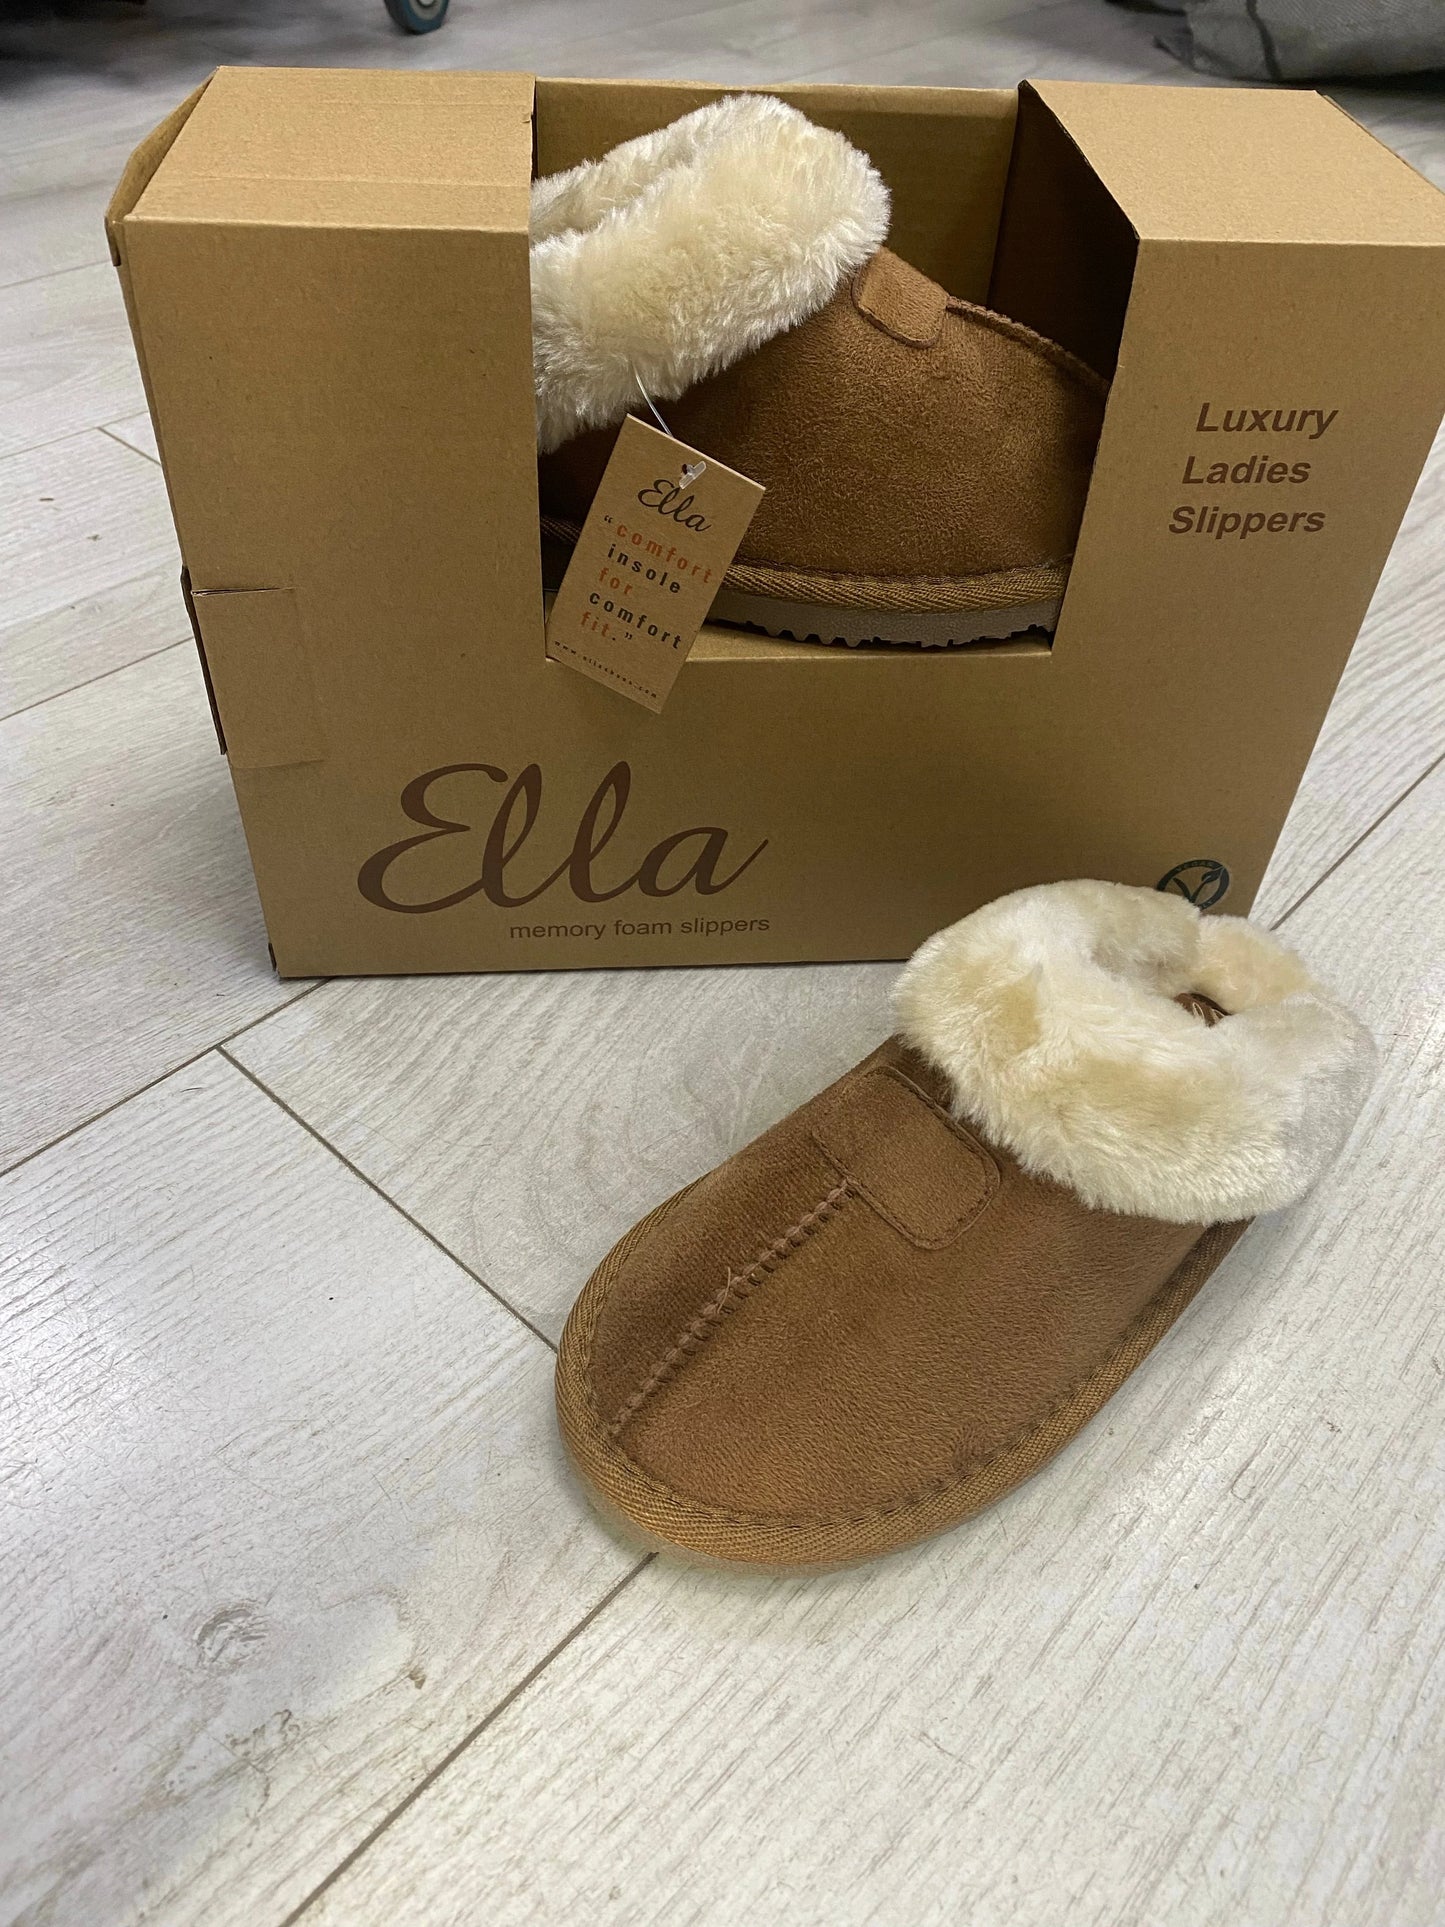 Chestnut Ella Jill mock suede slippers sizes 3-8